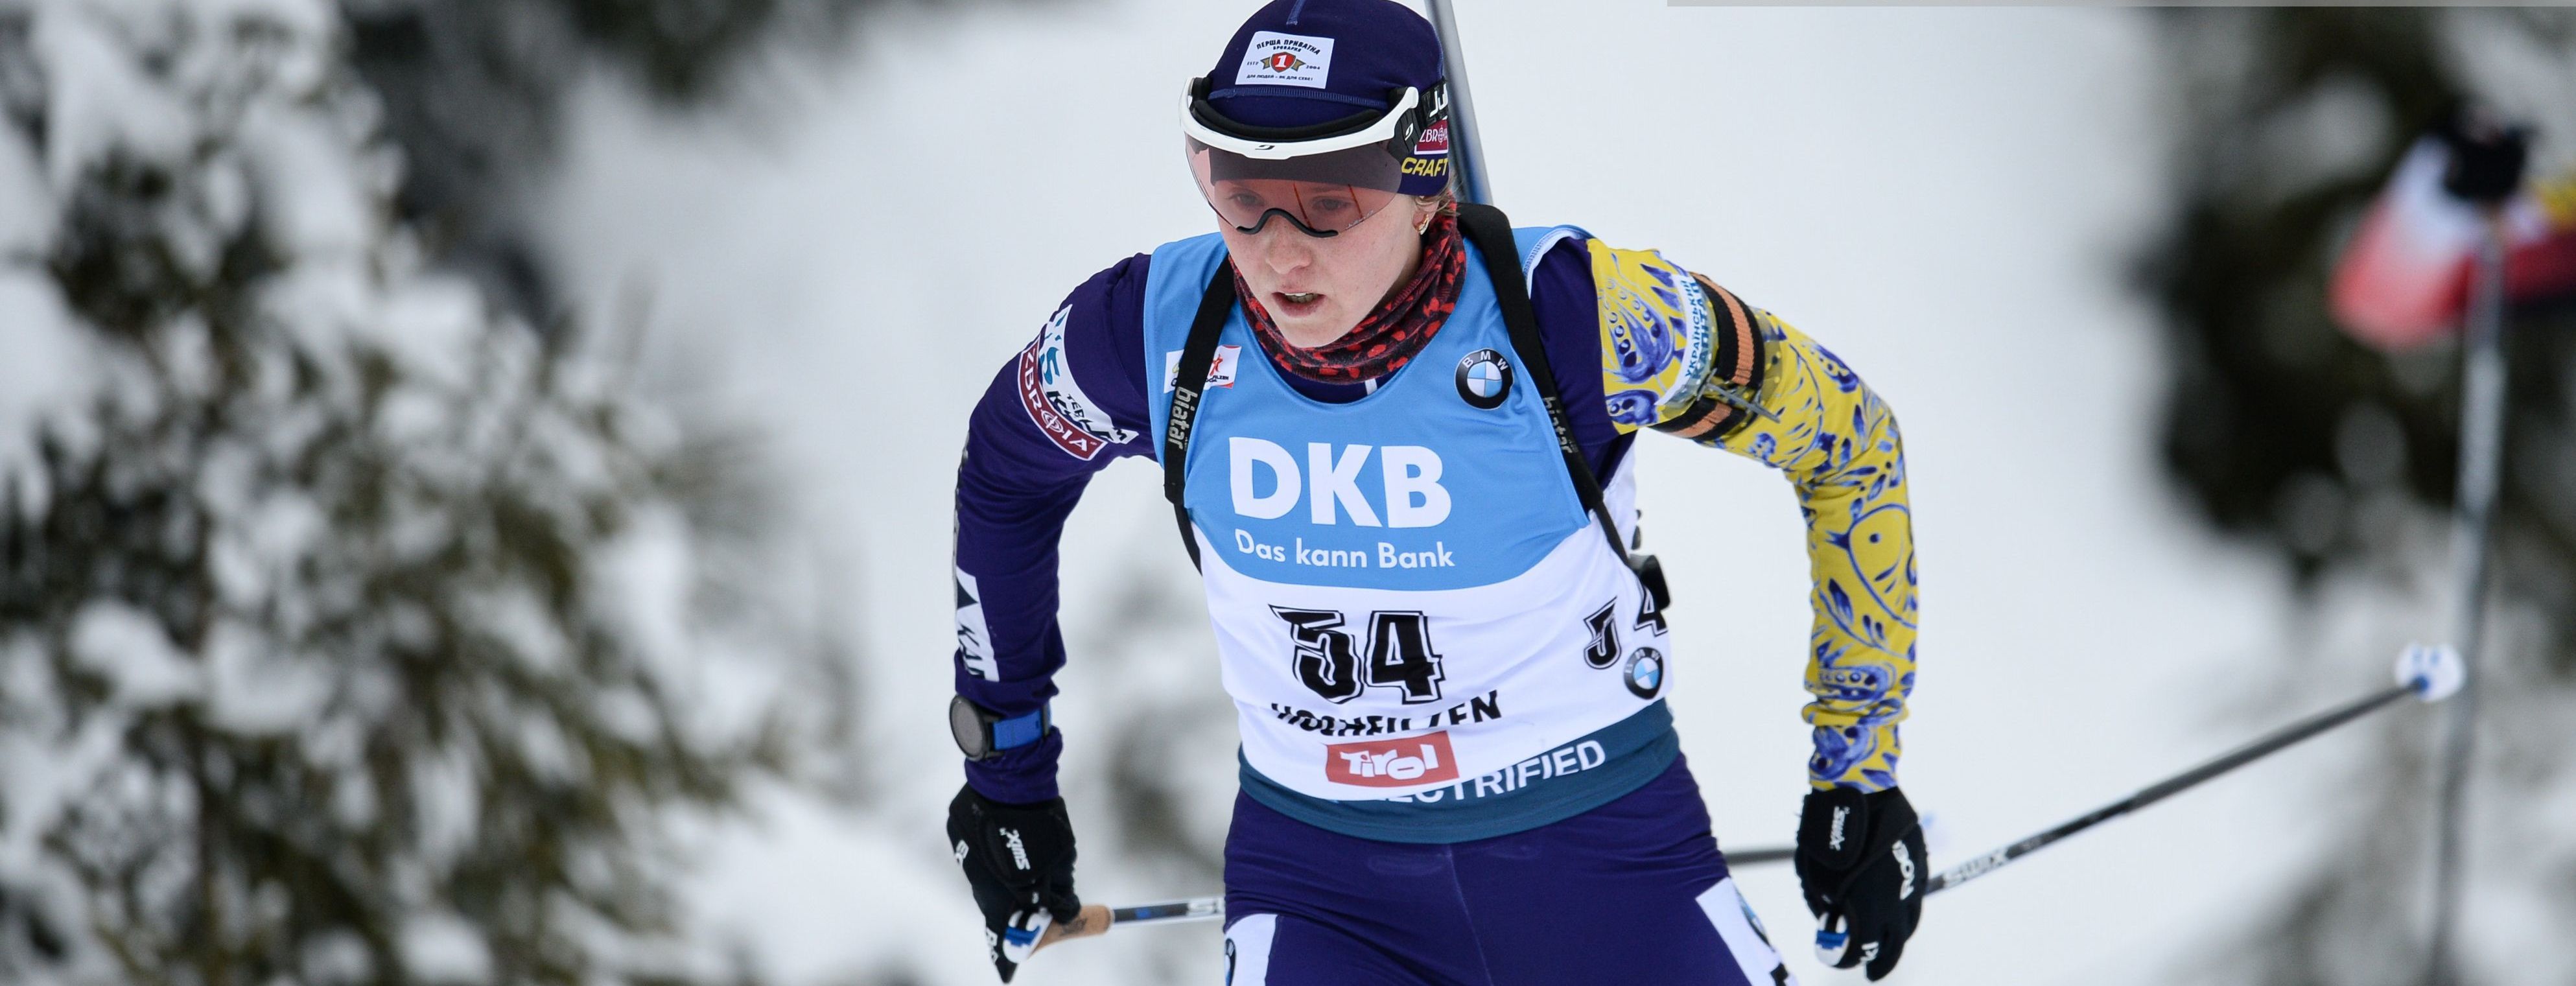 Біатлон: українка Блашко виграла контрольний спринт у Фінляндії, Підручний - у трійці в чоловіків